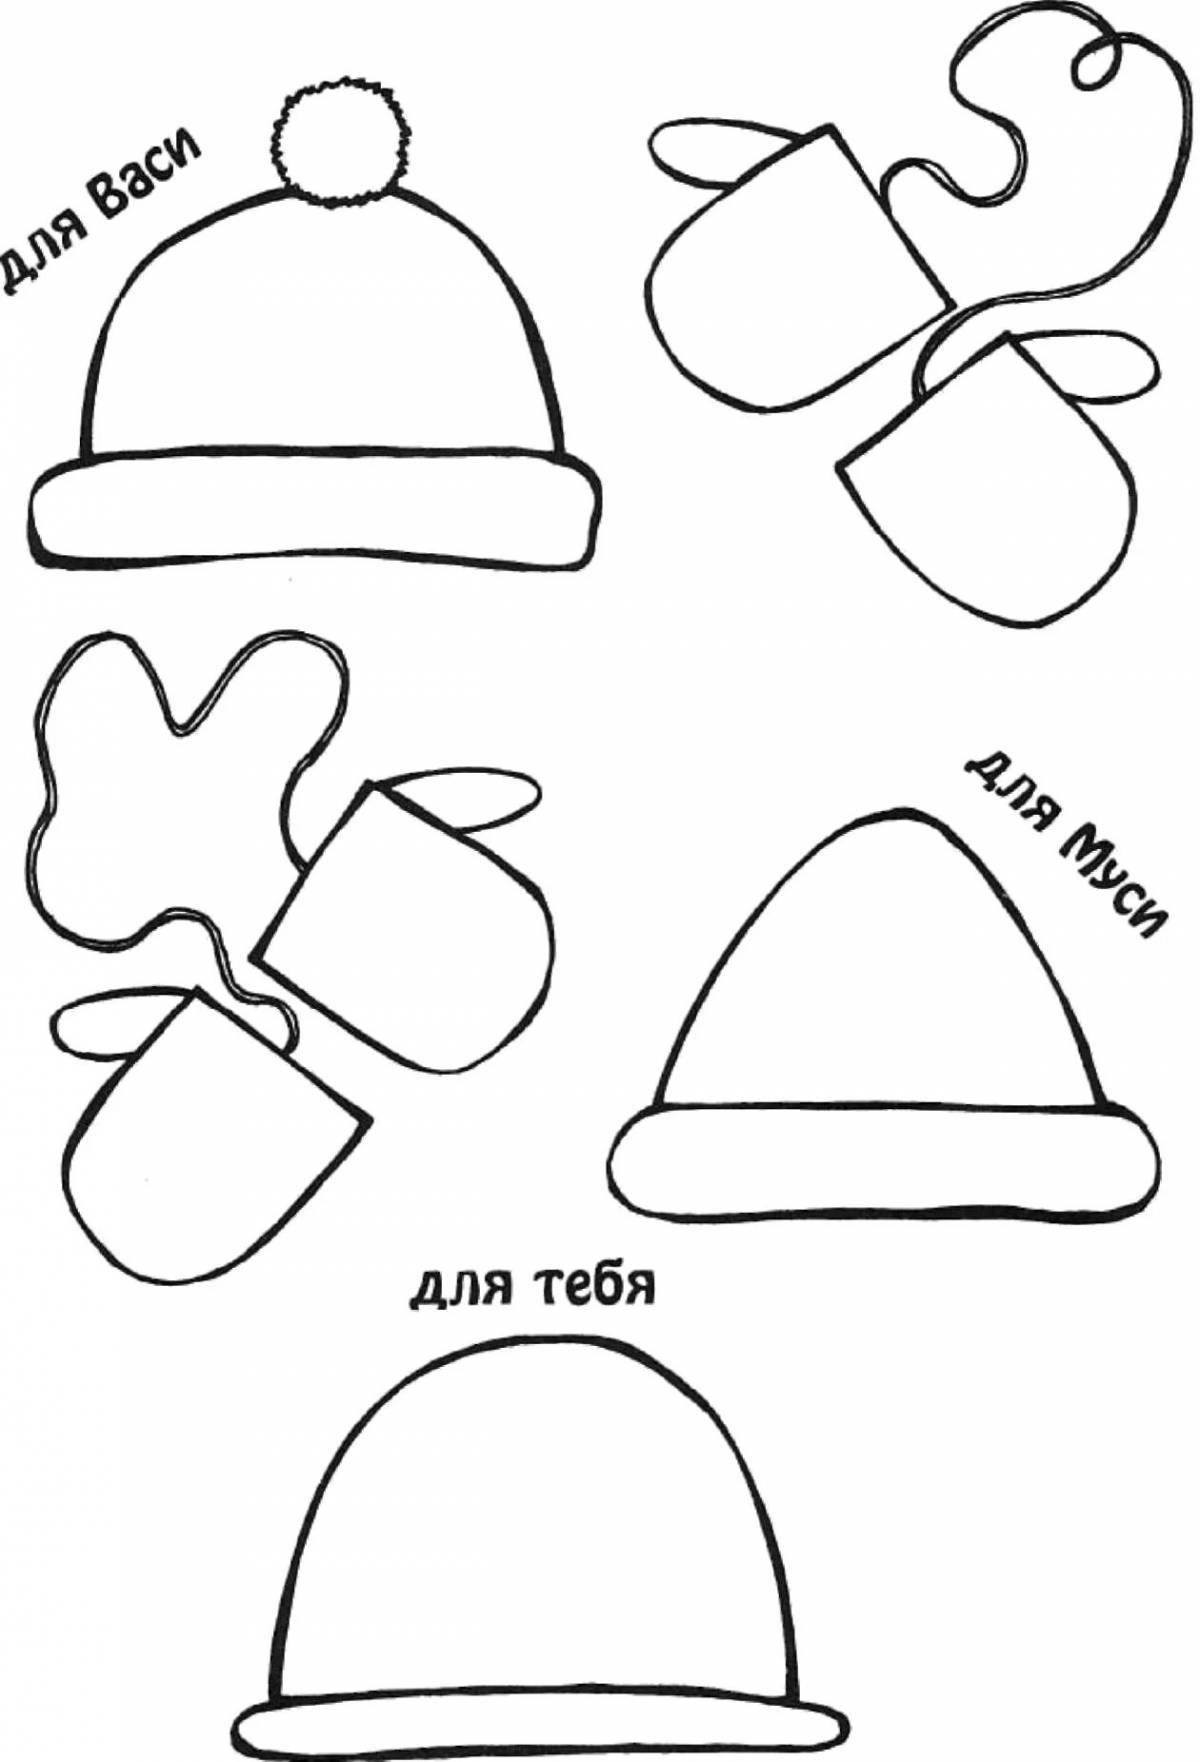 Раскраска шляпка для игристых игр для детей 2-3 лет